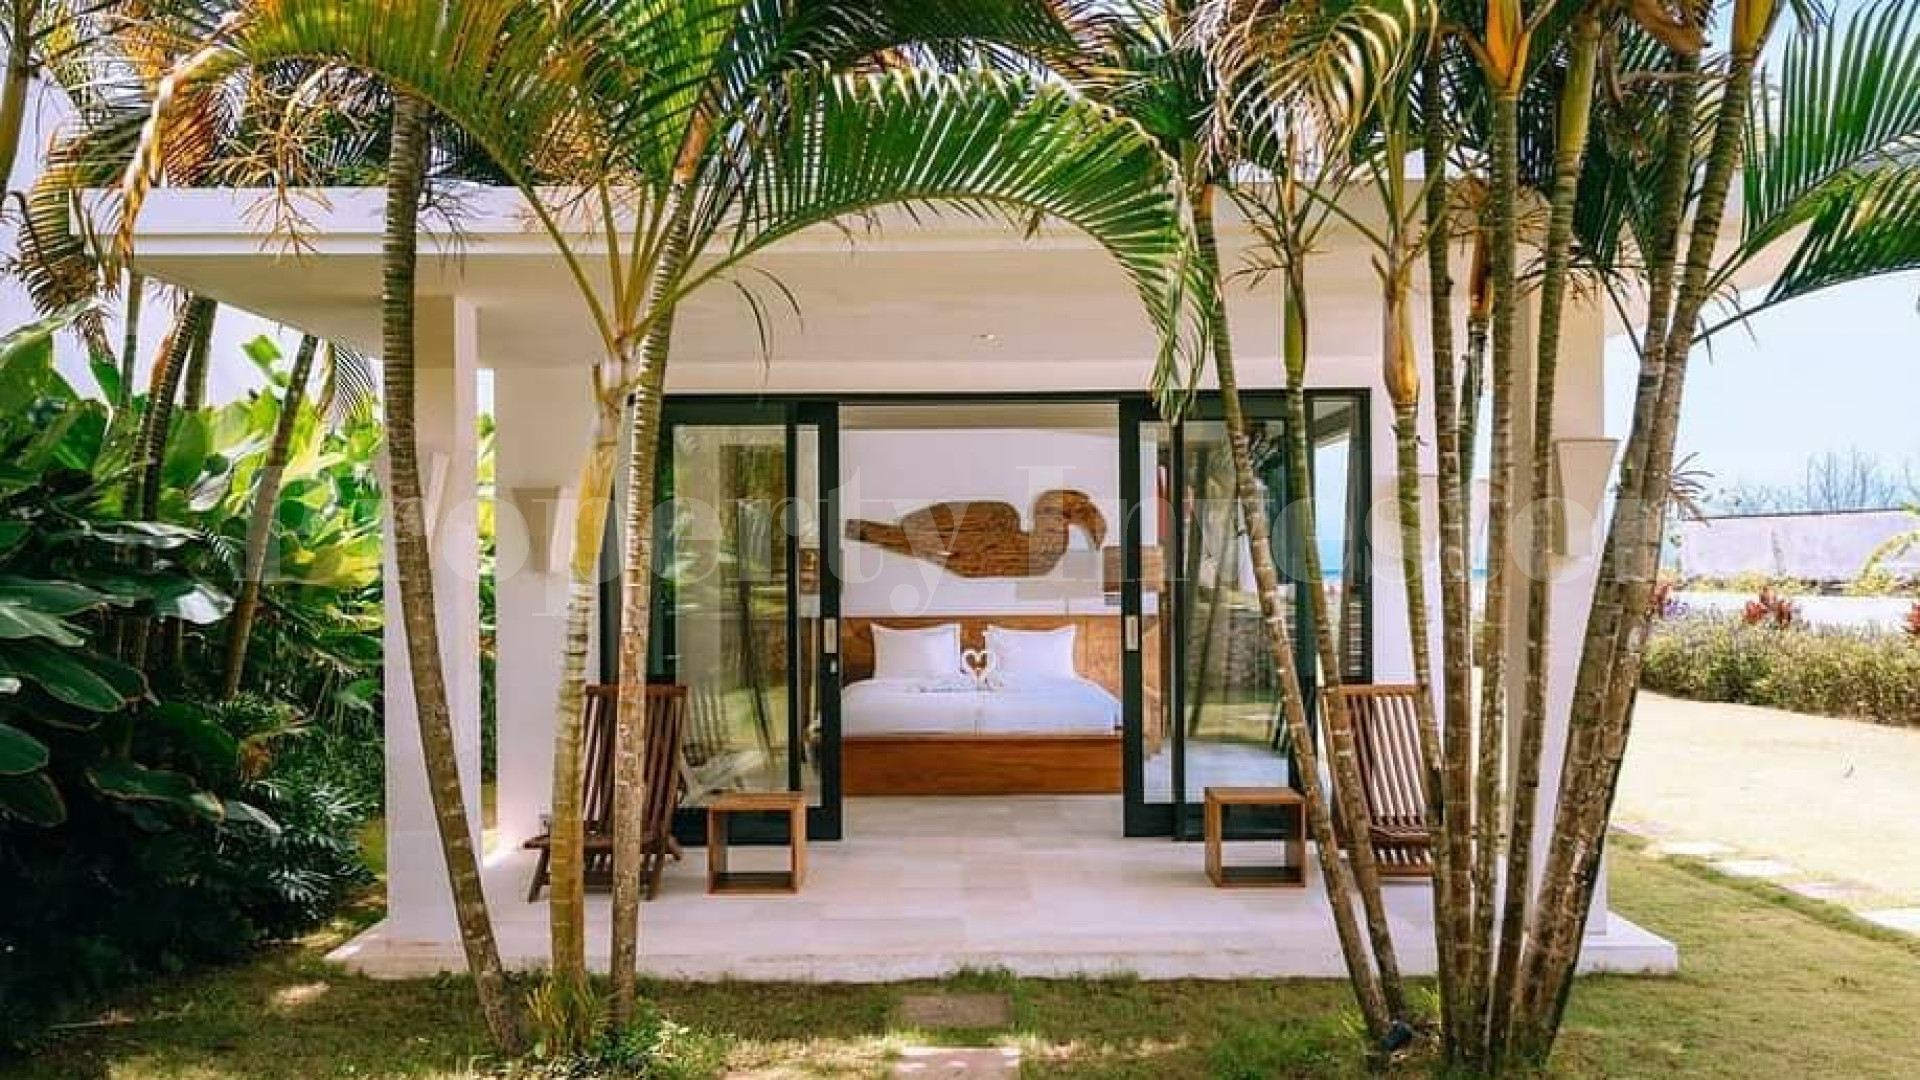 Impressive 5 Bedroom Contemporary Luxury Villa for Sale in Cemagi, Bali